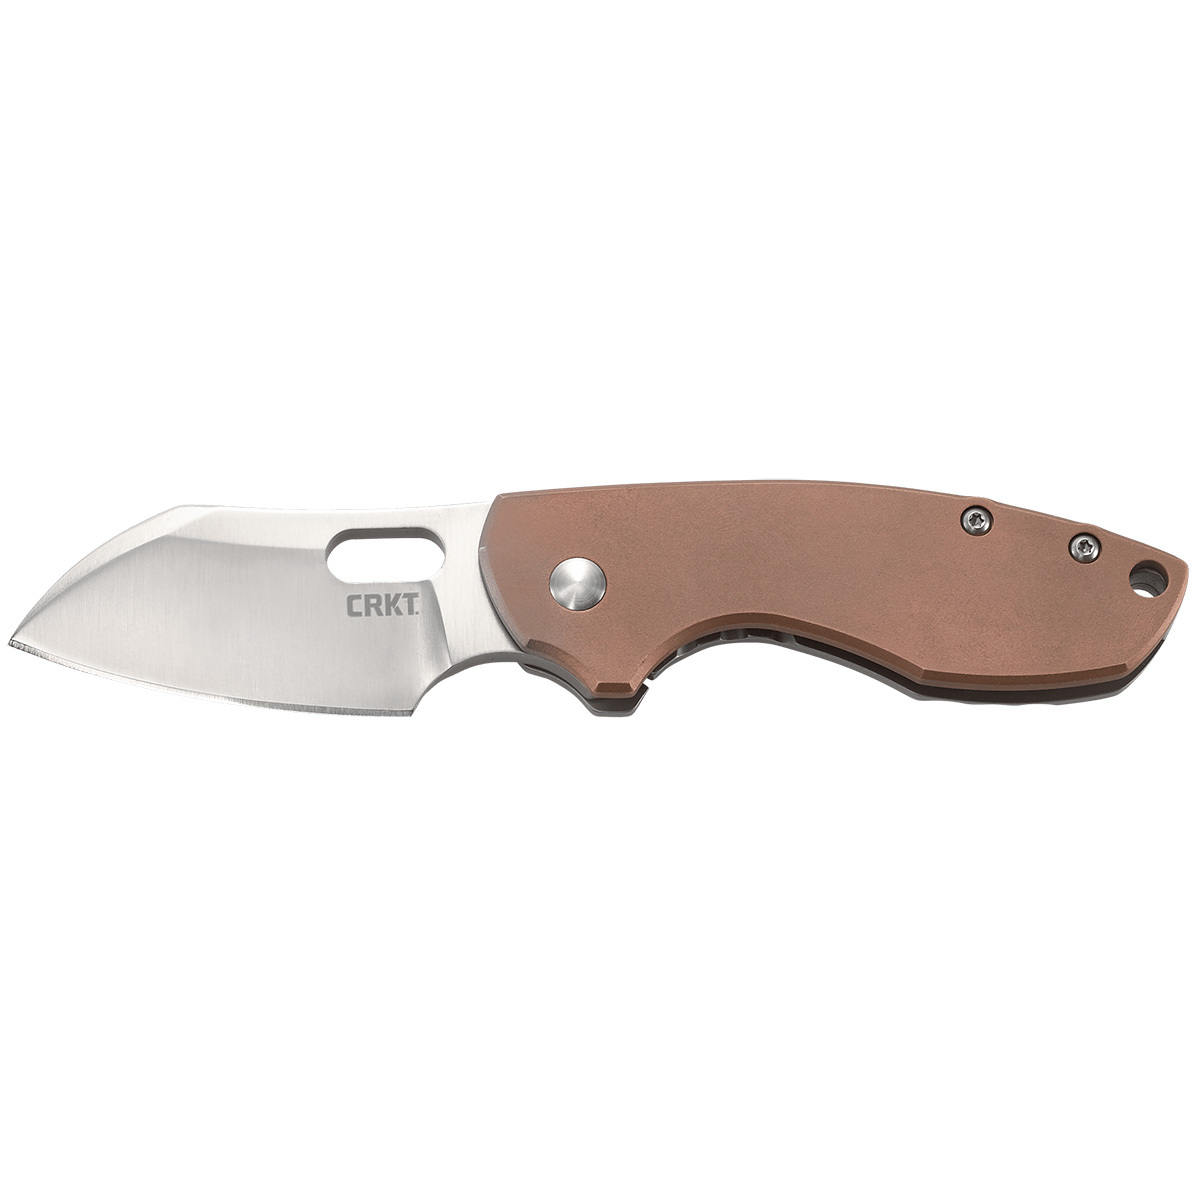 Складной нож CRKT Pilar copper, сталь 8Cr13MoV, рукоять медь/сталь